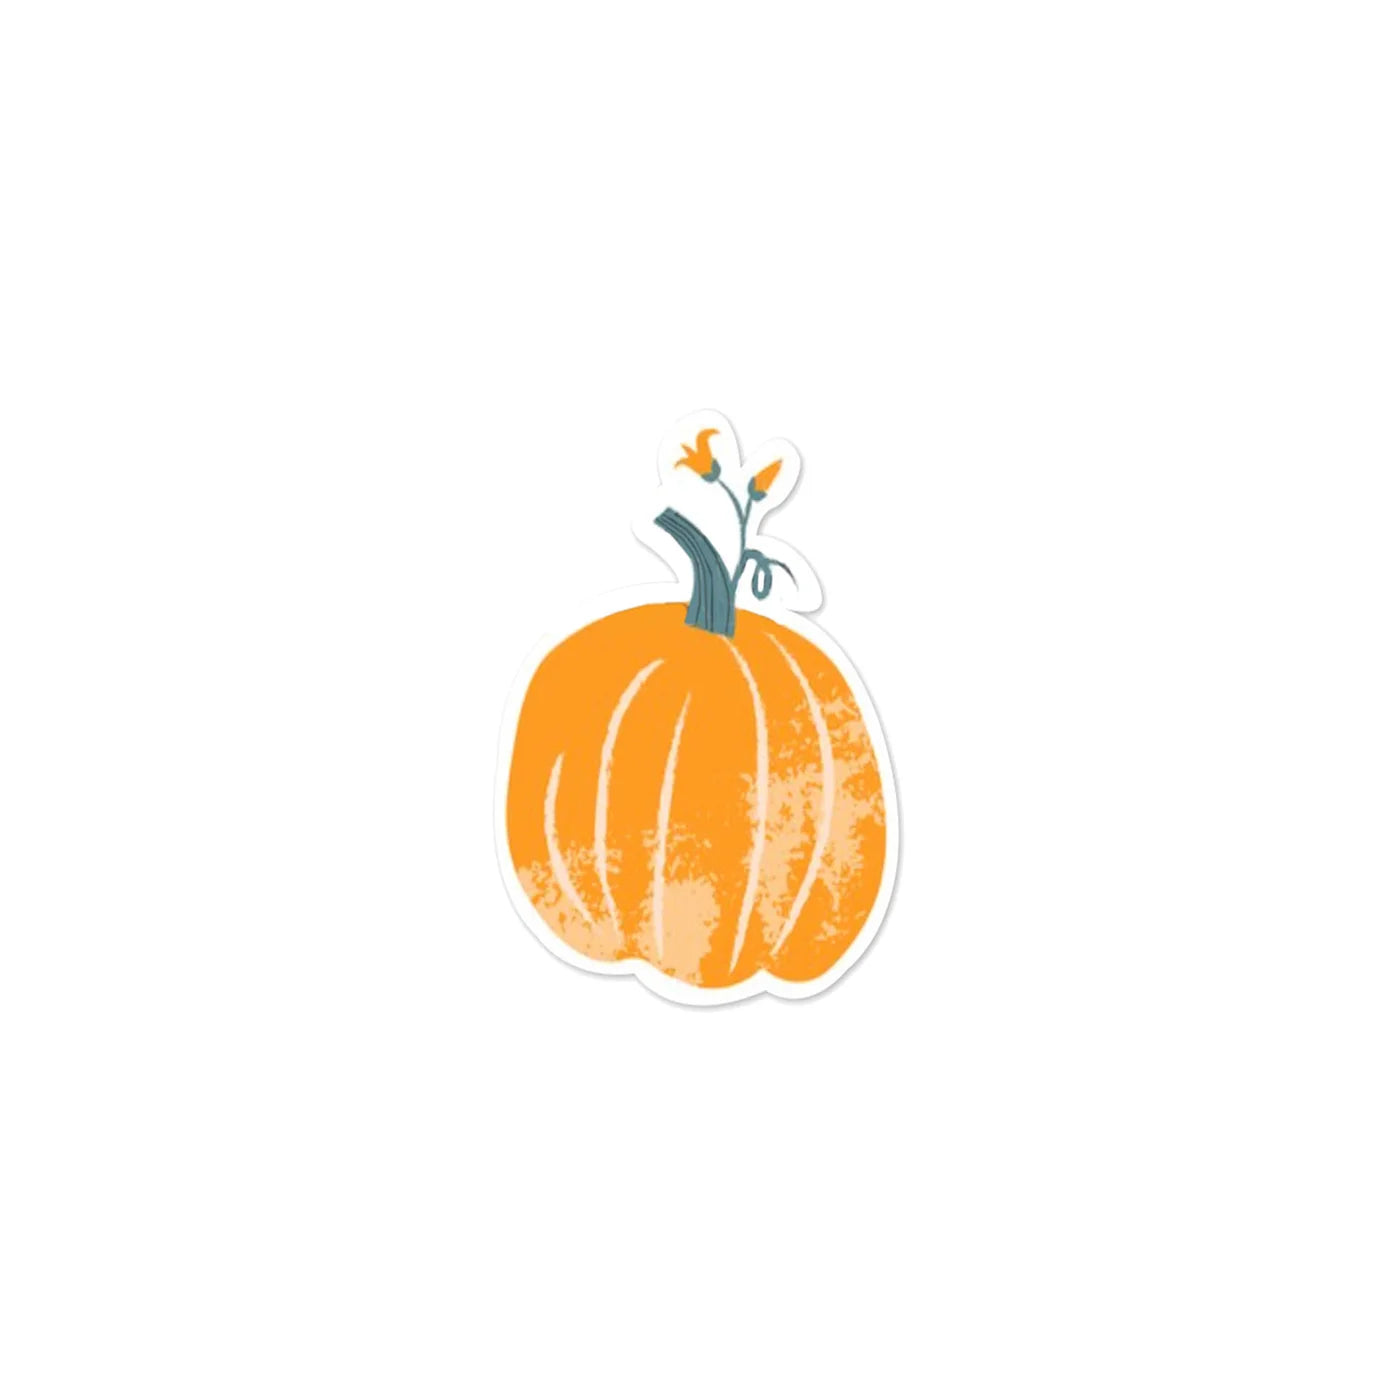 Pumpkin shaped Napkins